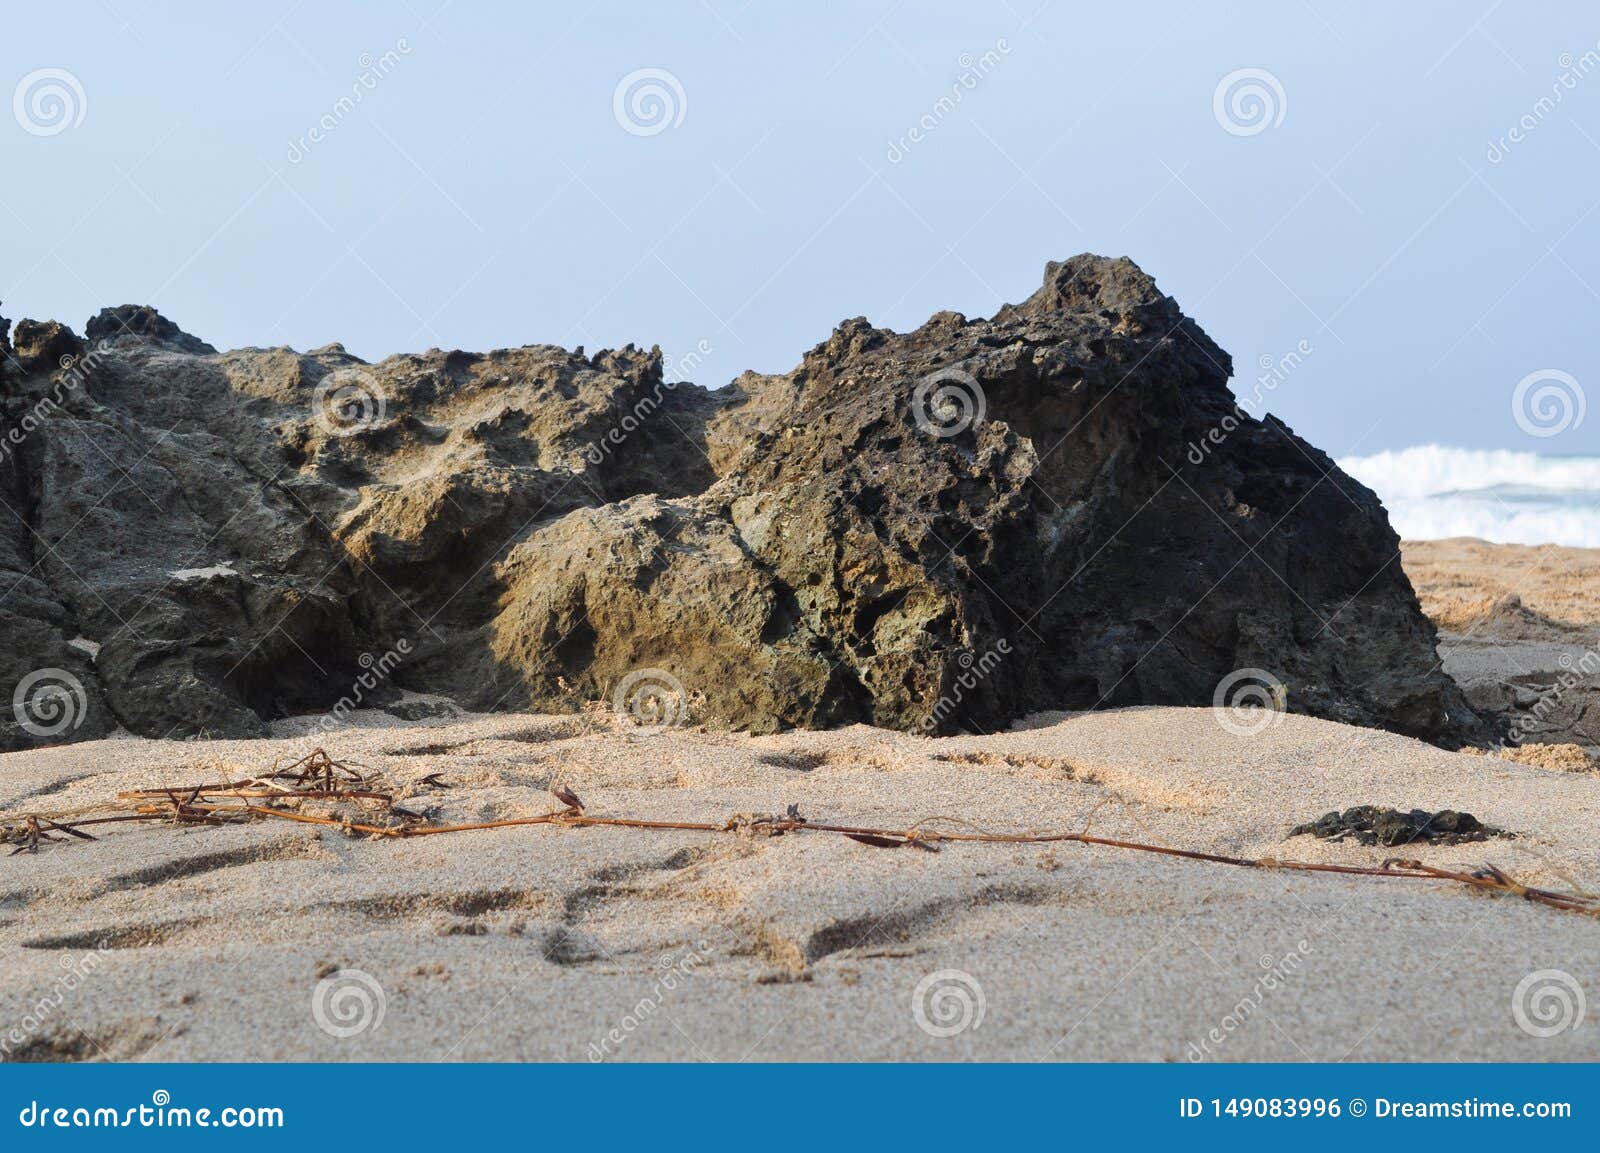 Pietre della spiaggia o della roccia sulla spiaggia 02. Rock or Beach Stones on the Beach for Photo Manipulation Stock